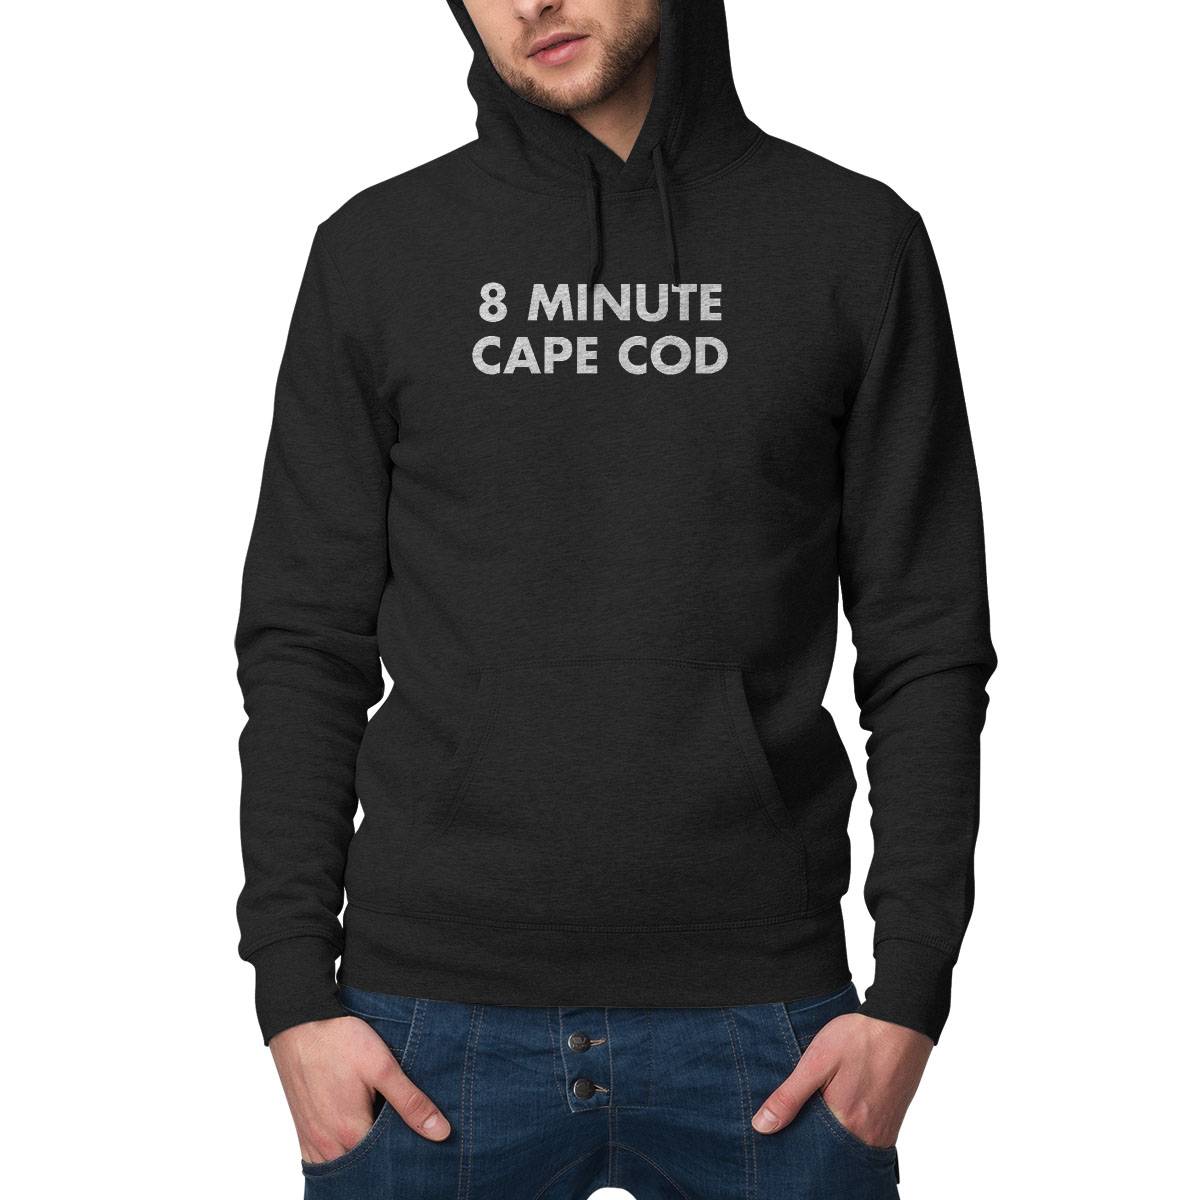 8 MINUTE CAPE COD